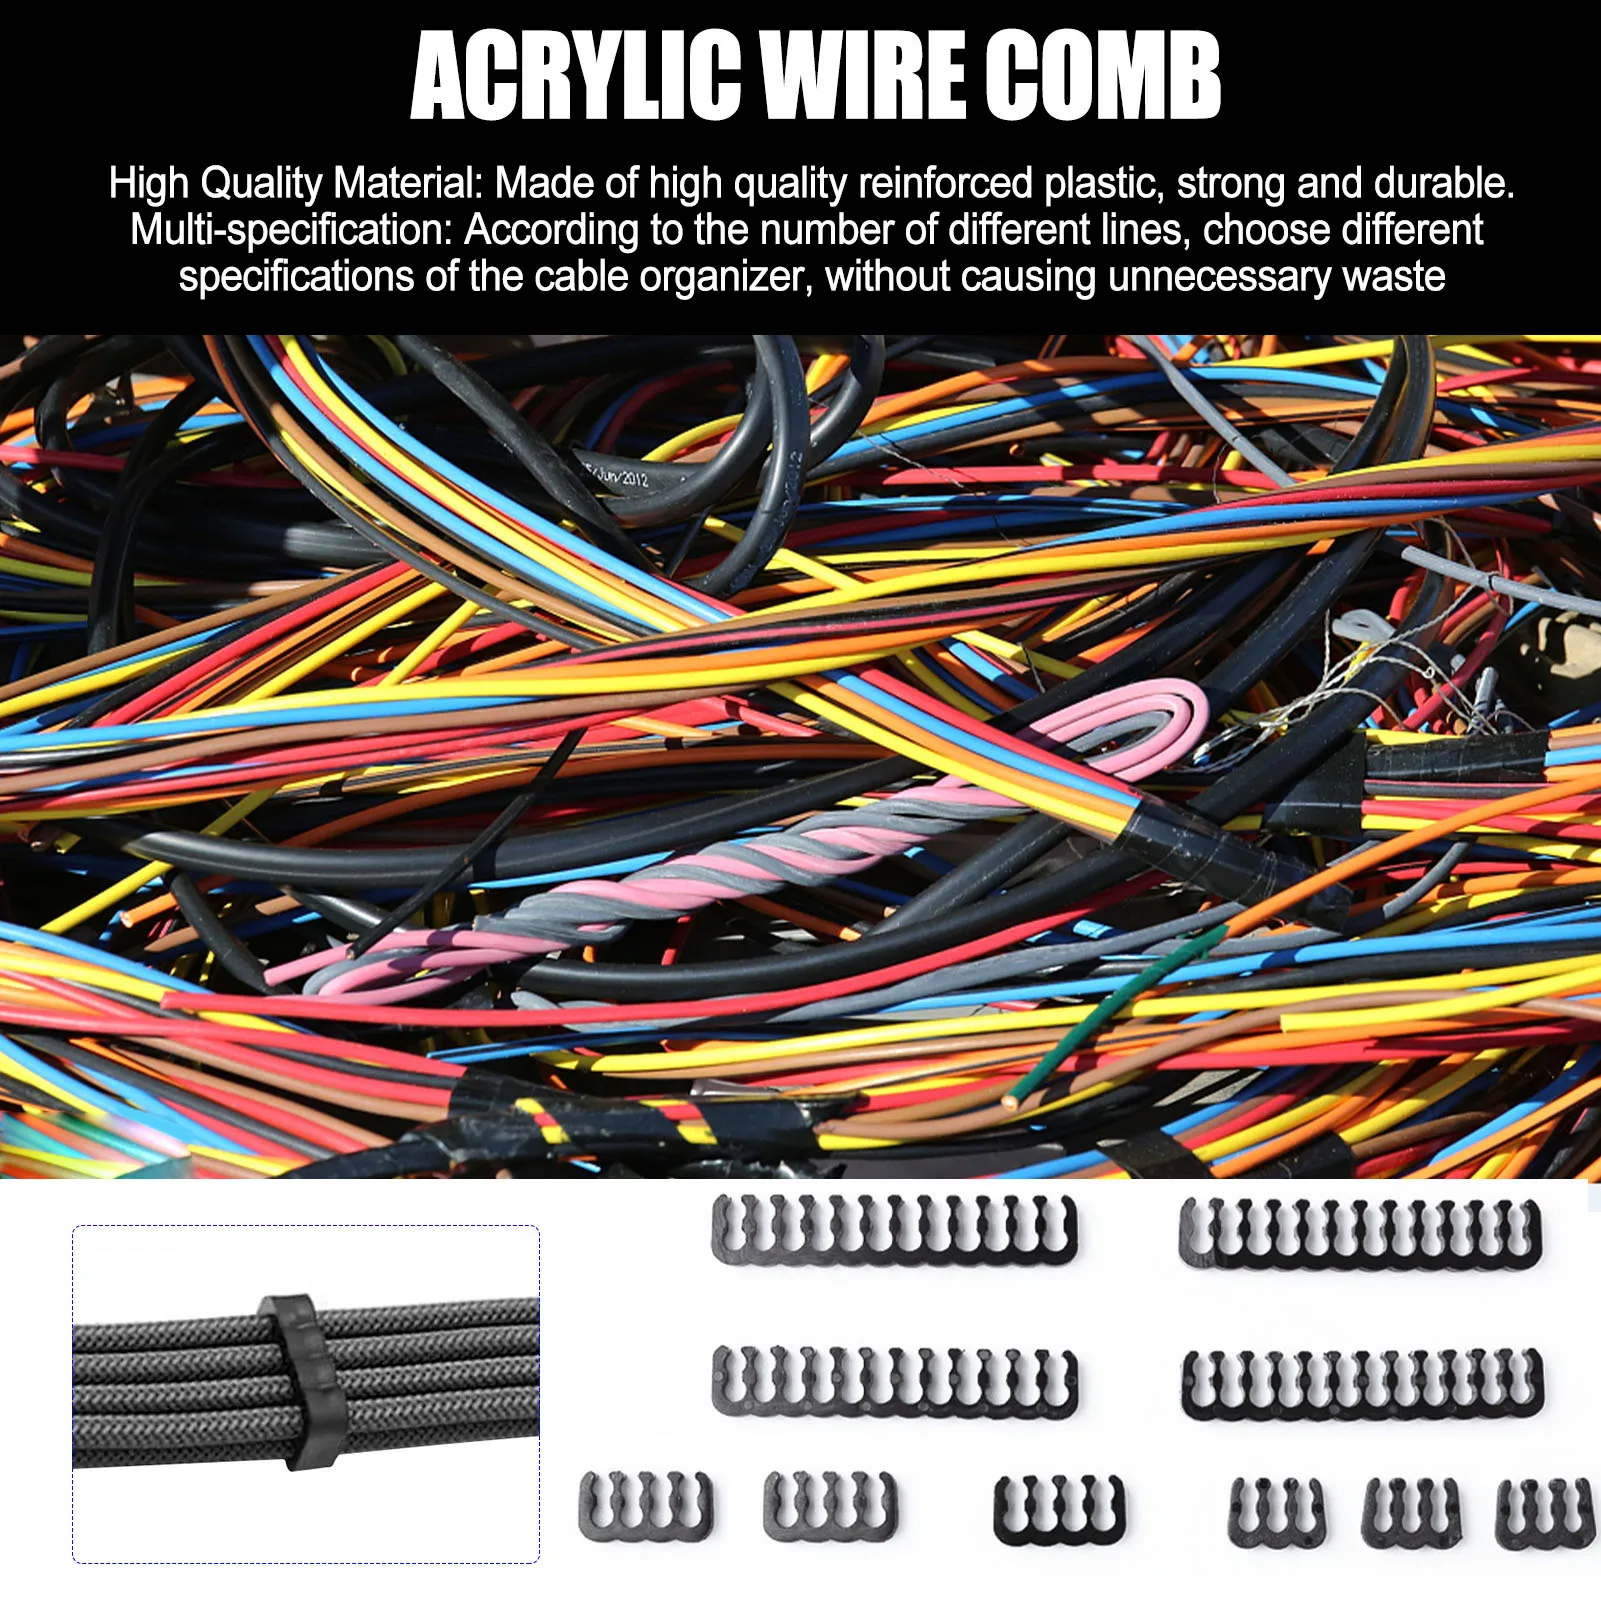 Cable Comb - CABLECOMB